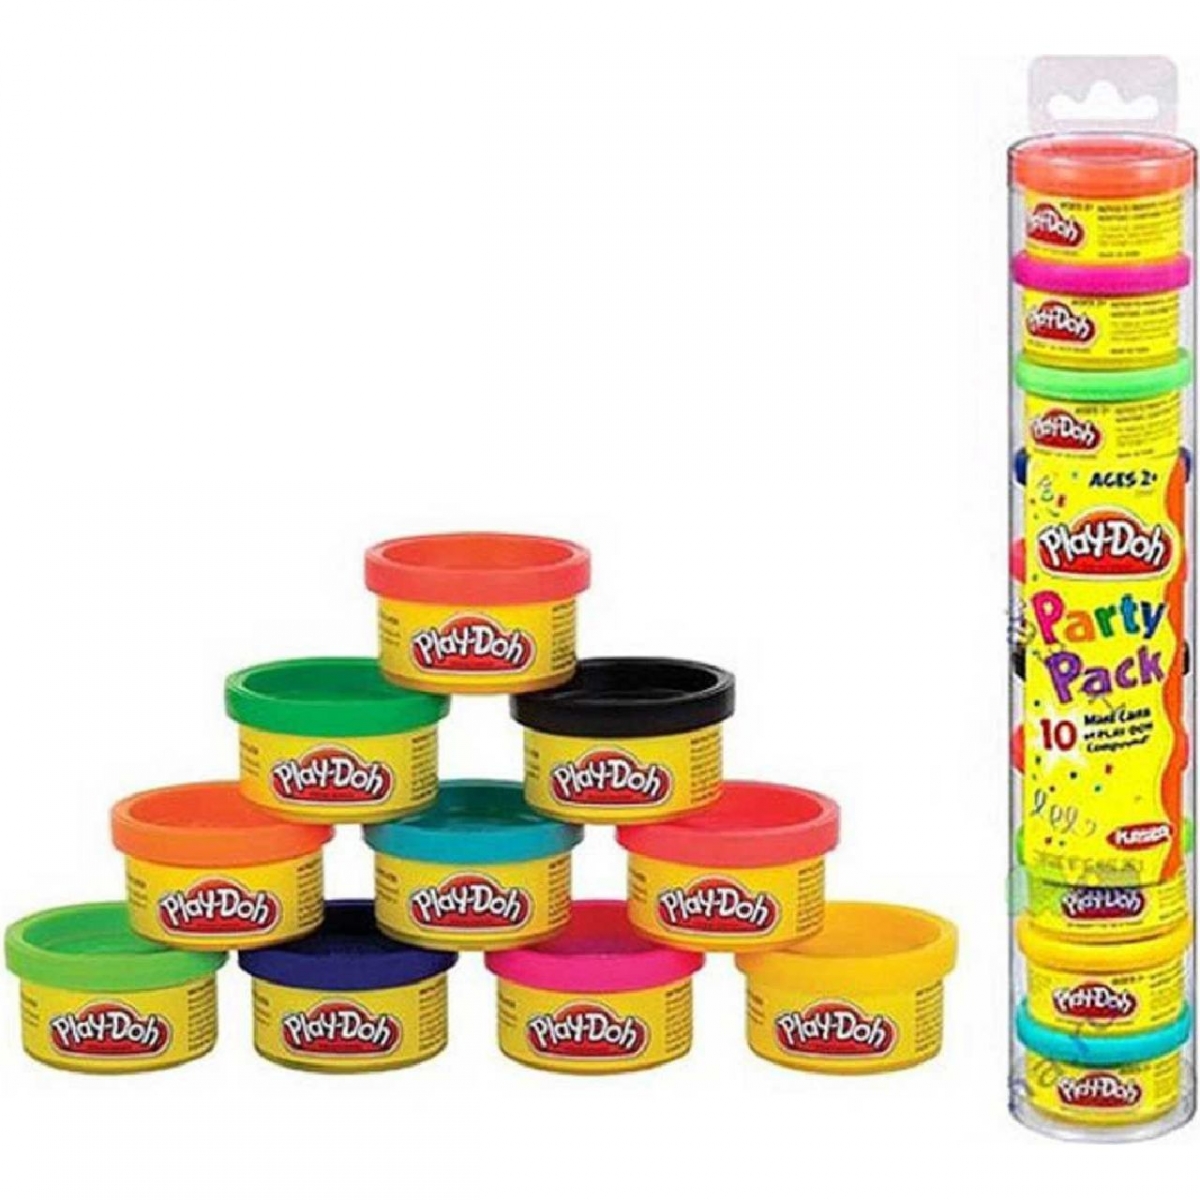    Play-Doh   -   (Hasbro)